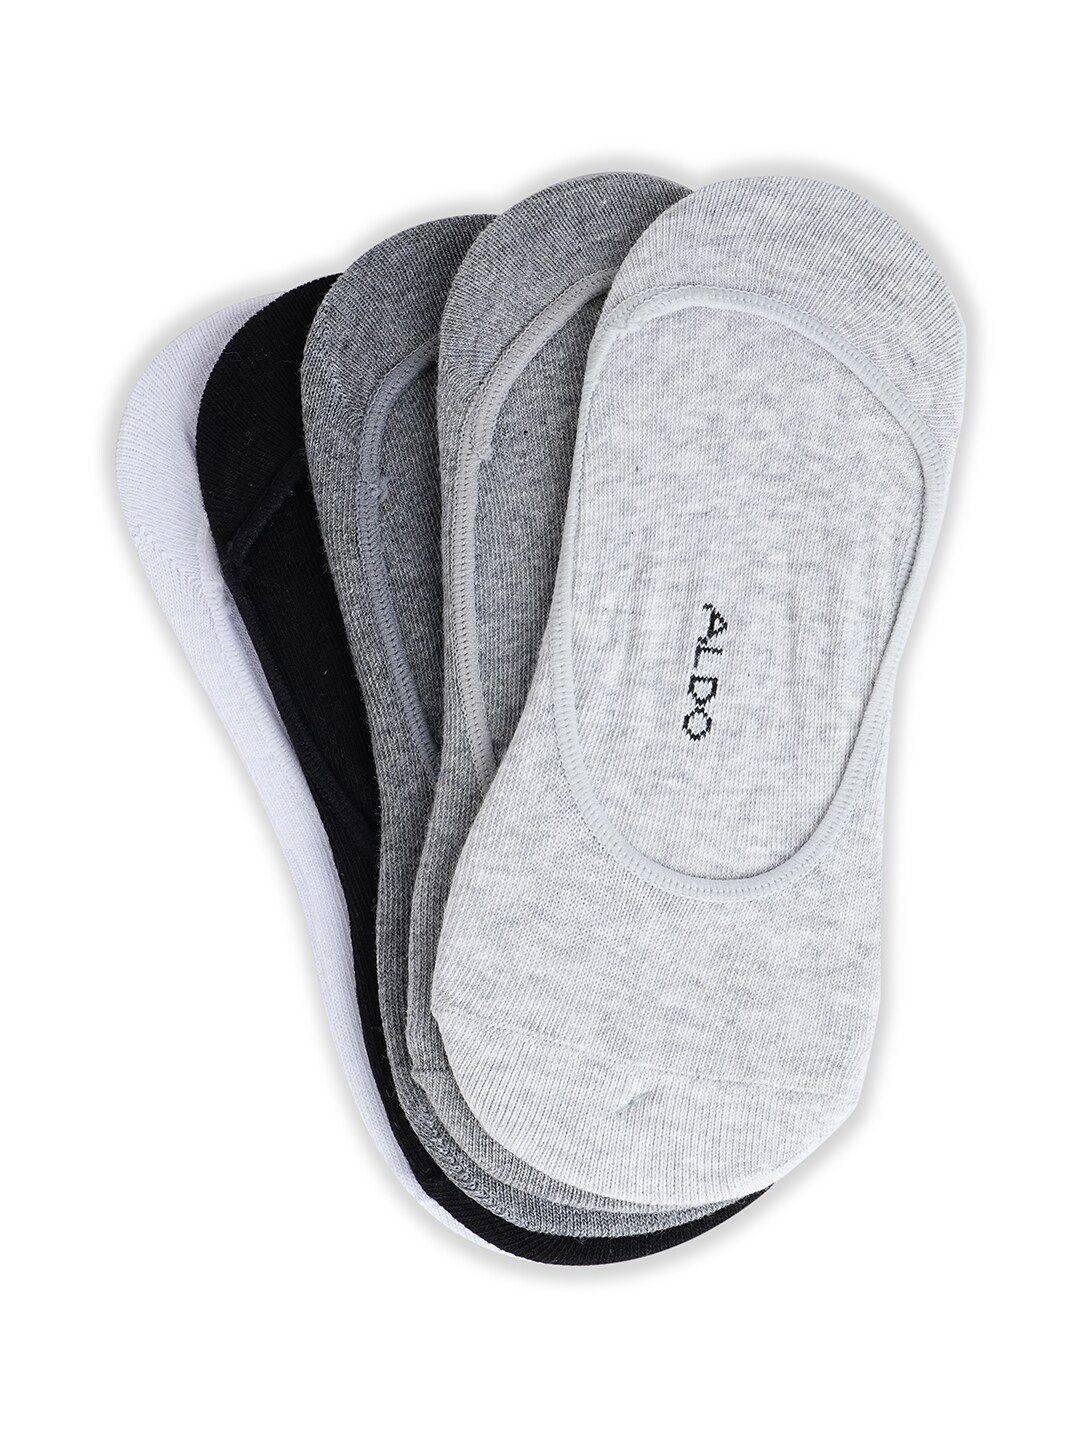 aldo-men-pack-of-5-cotton-shoe-liner-socks